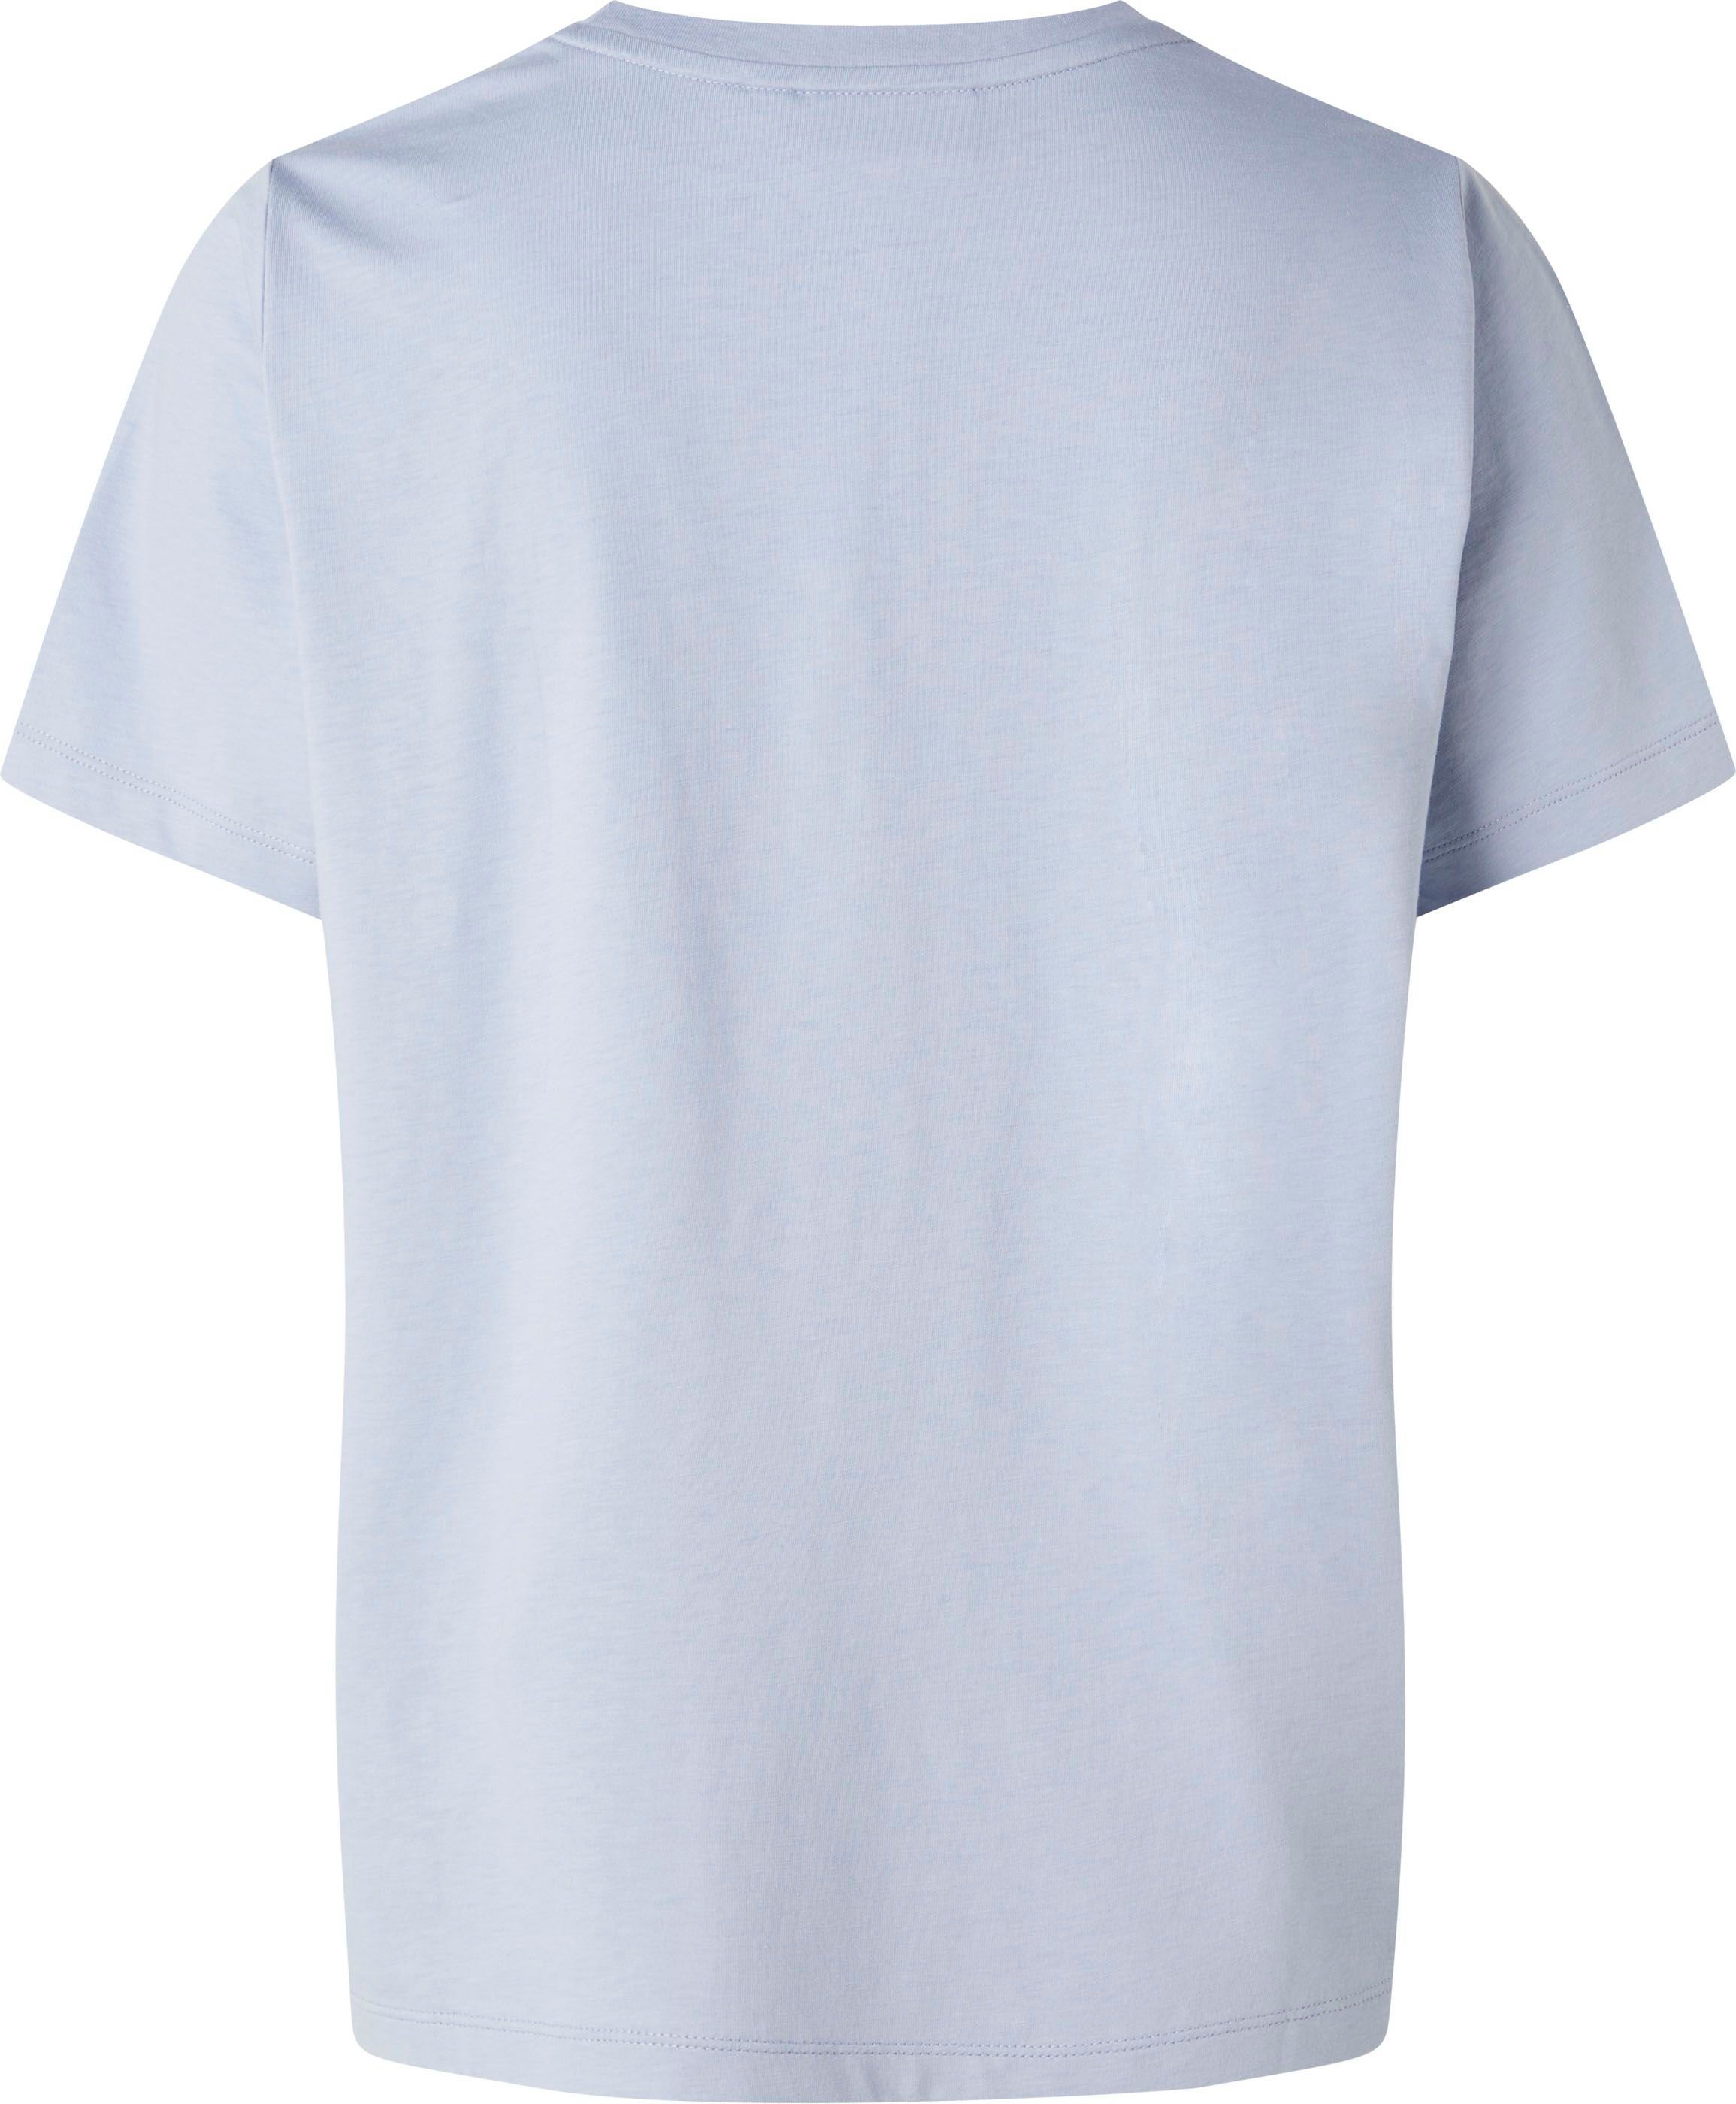 hellblau T-SHIRT MICRO Klein Baumwolle aus reiner T-Shirt Calvin LOGO